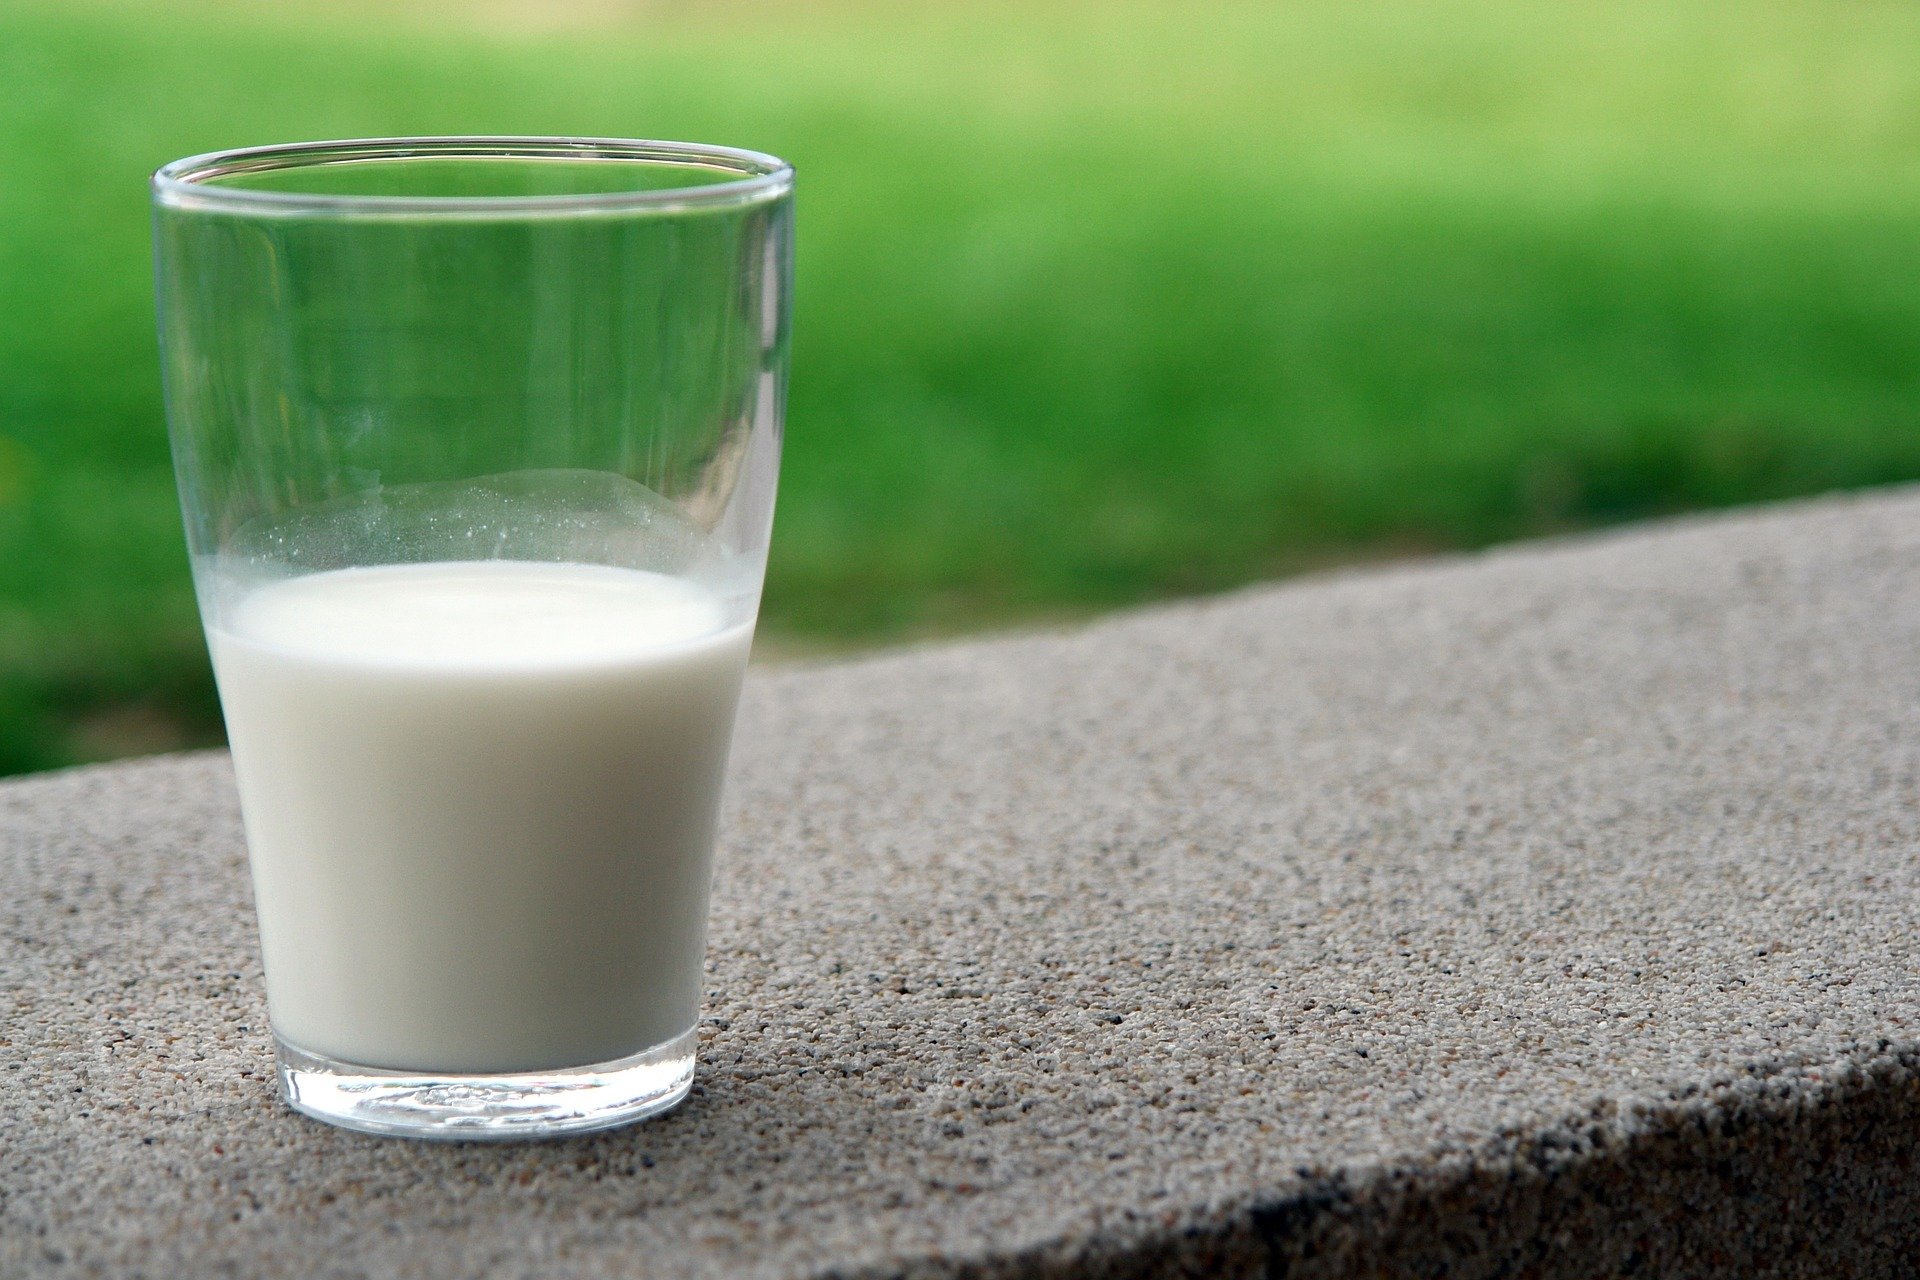 منتجات الحليب المفيدة قد تضر البعض